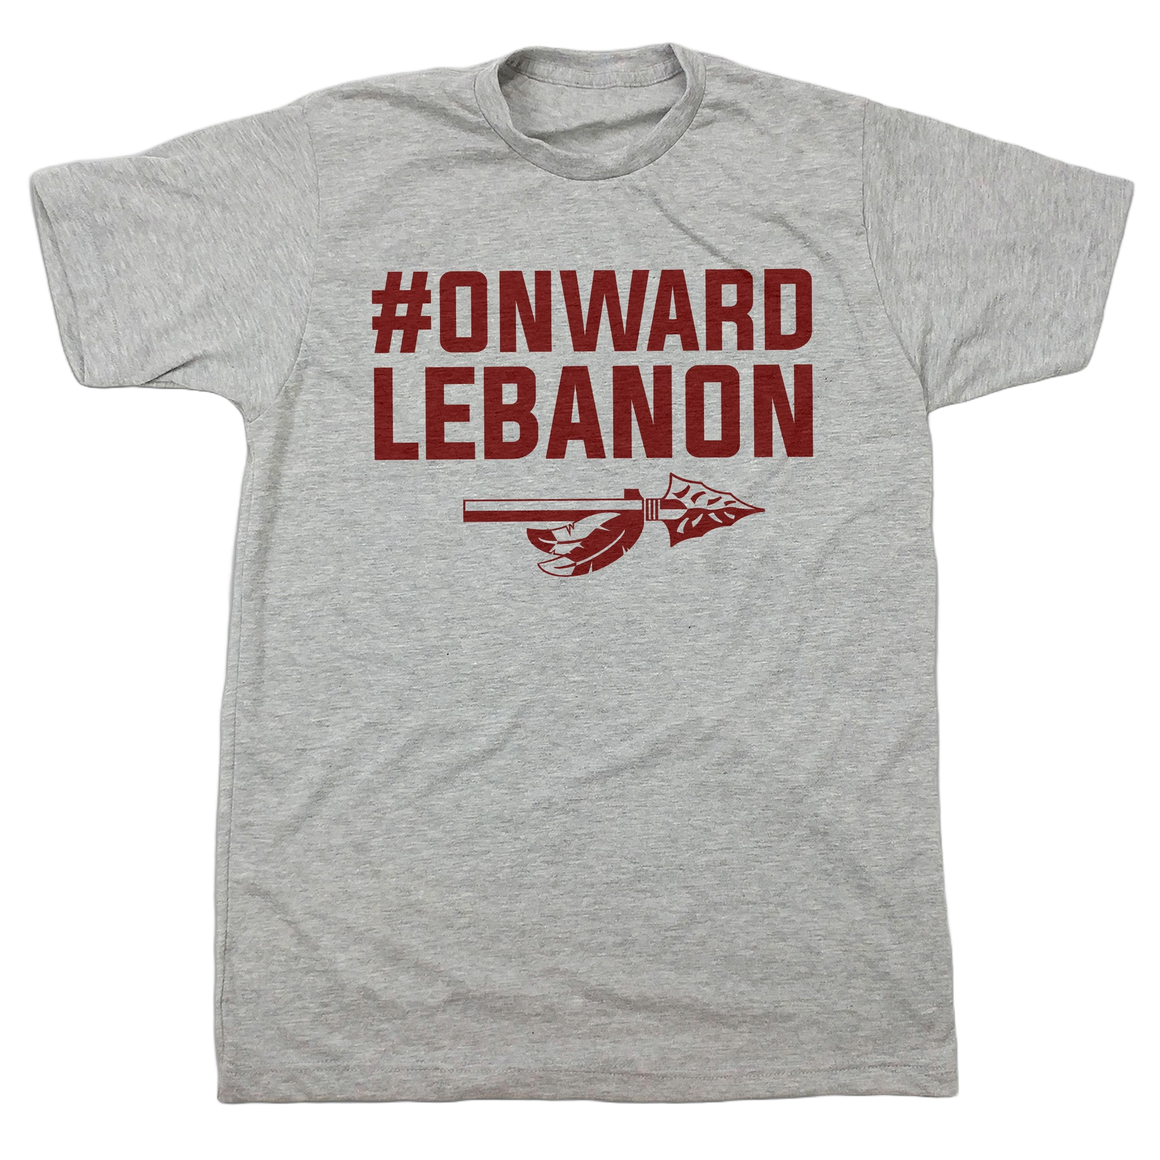 #Onward Lebanon - Cincy Shirts